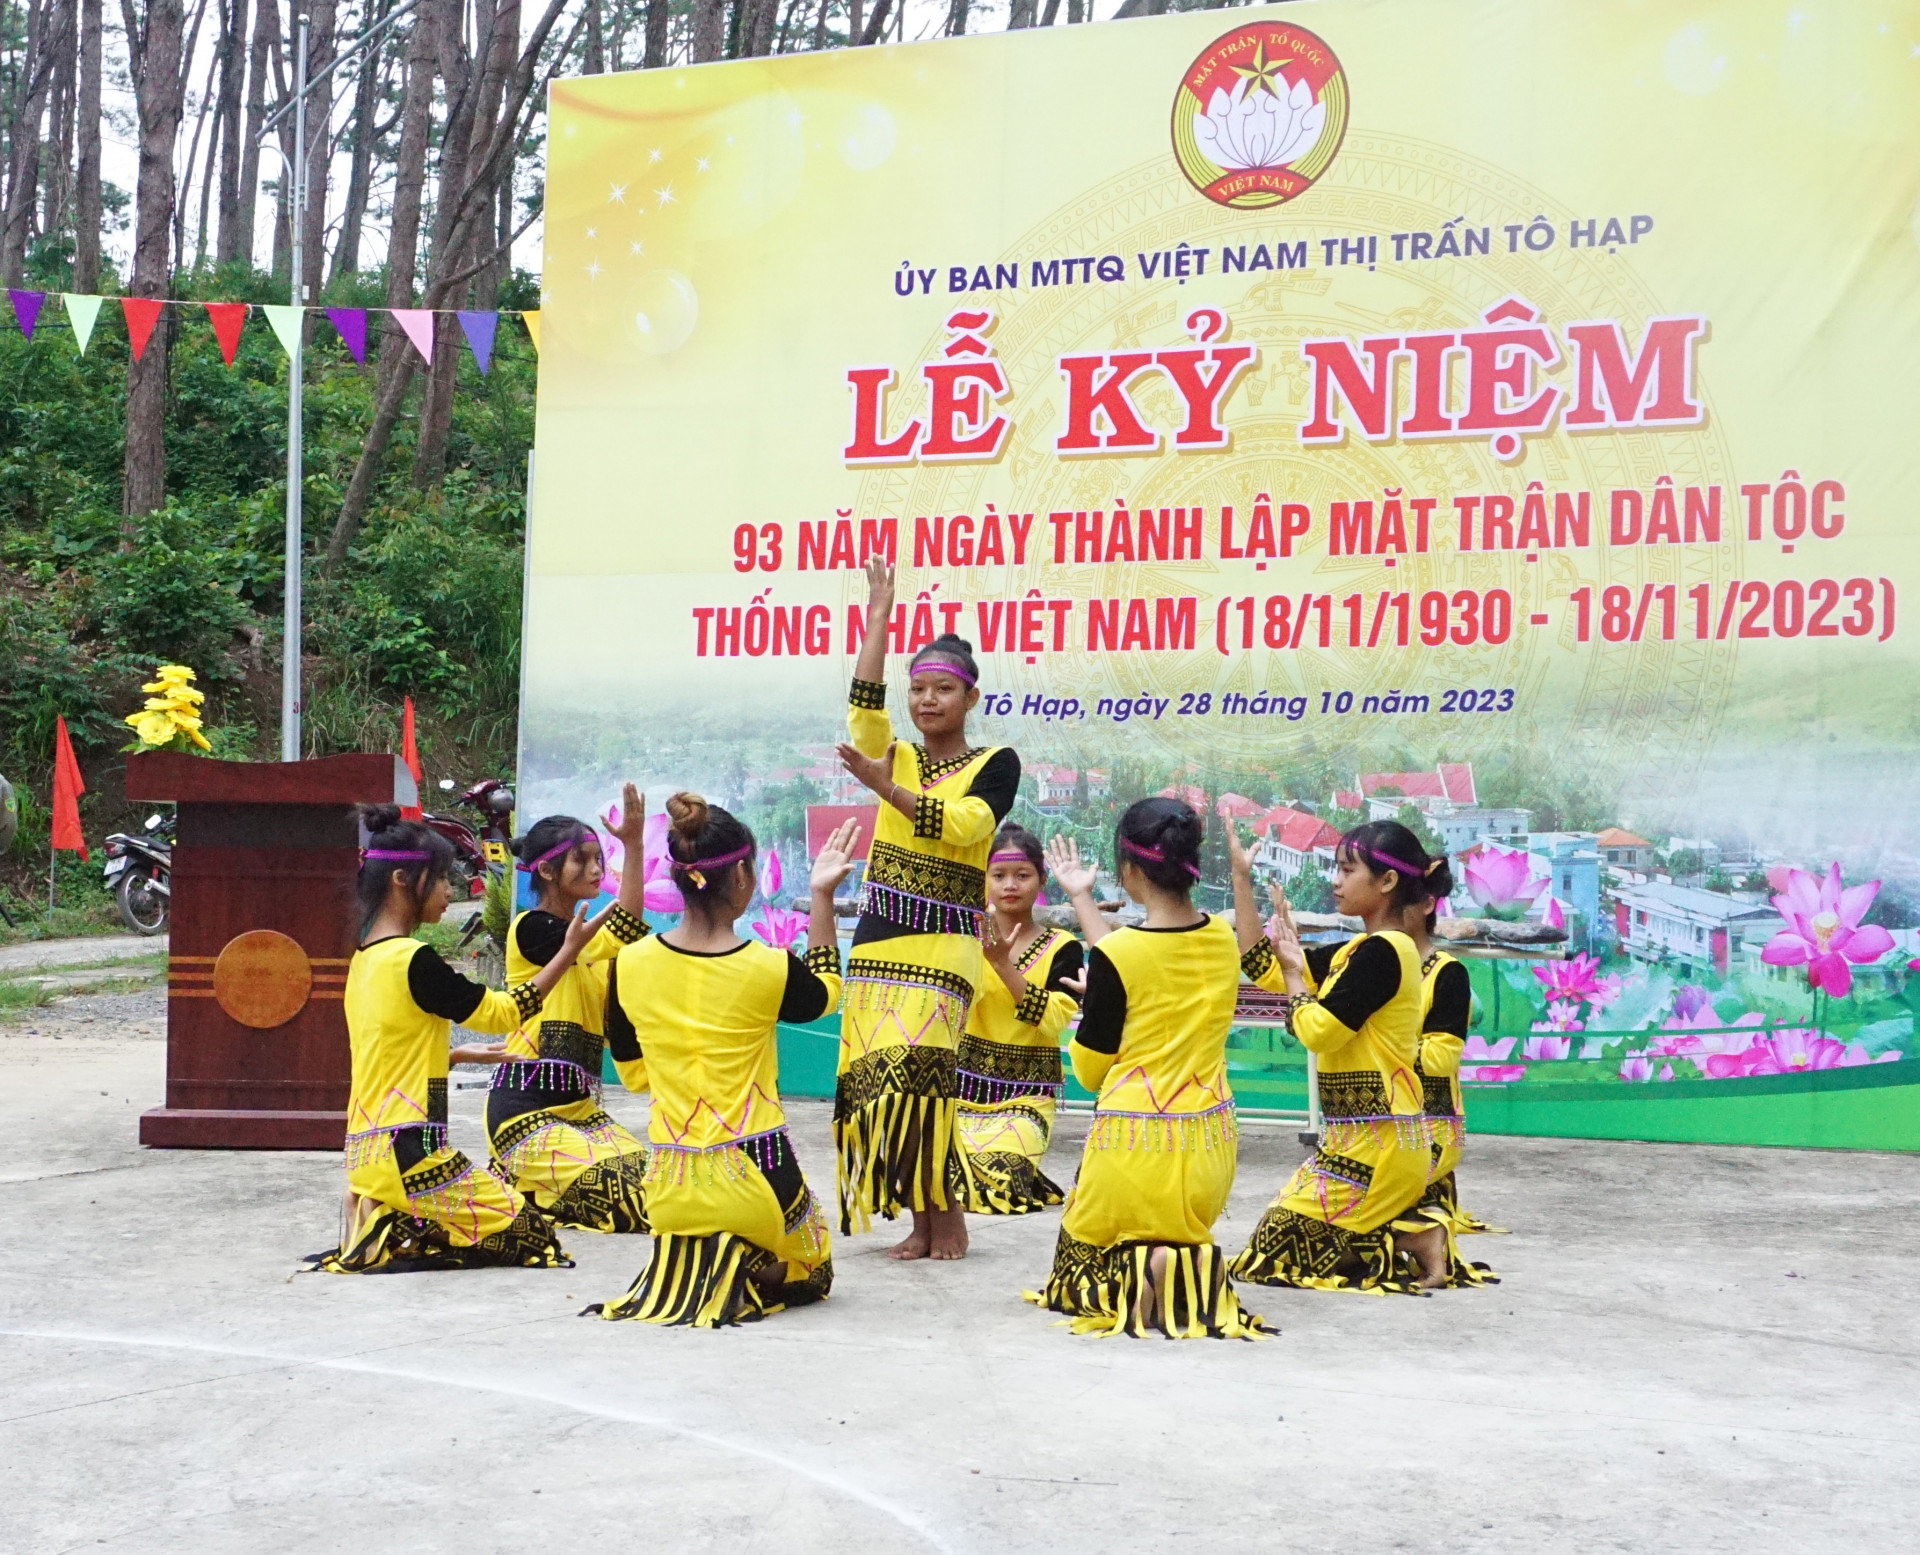 Dịp này, Ủy ban MTTQ Việt Nam thị trấn Tô Hạp tổ chức nhiều hoạt động kỷ niệm 93 năm Ngày tháng lập Mặt trận Dân tộc thống nhất Việt Nam (18-11-1930 - 18-11-2023)